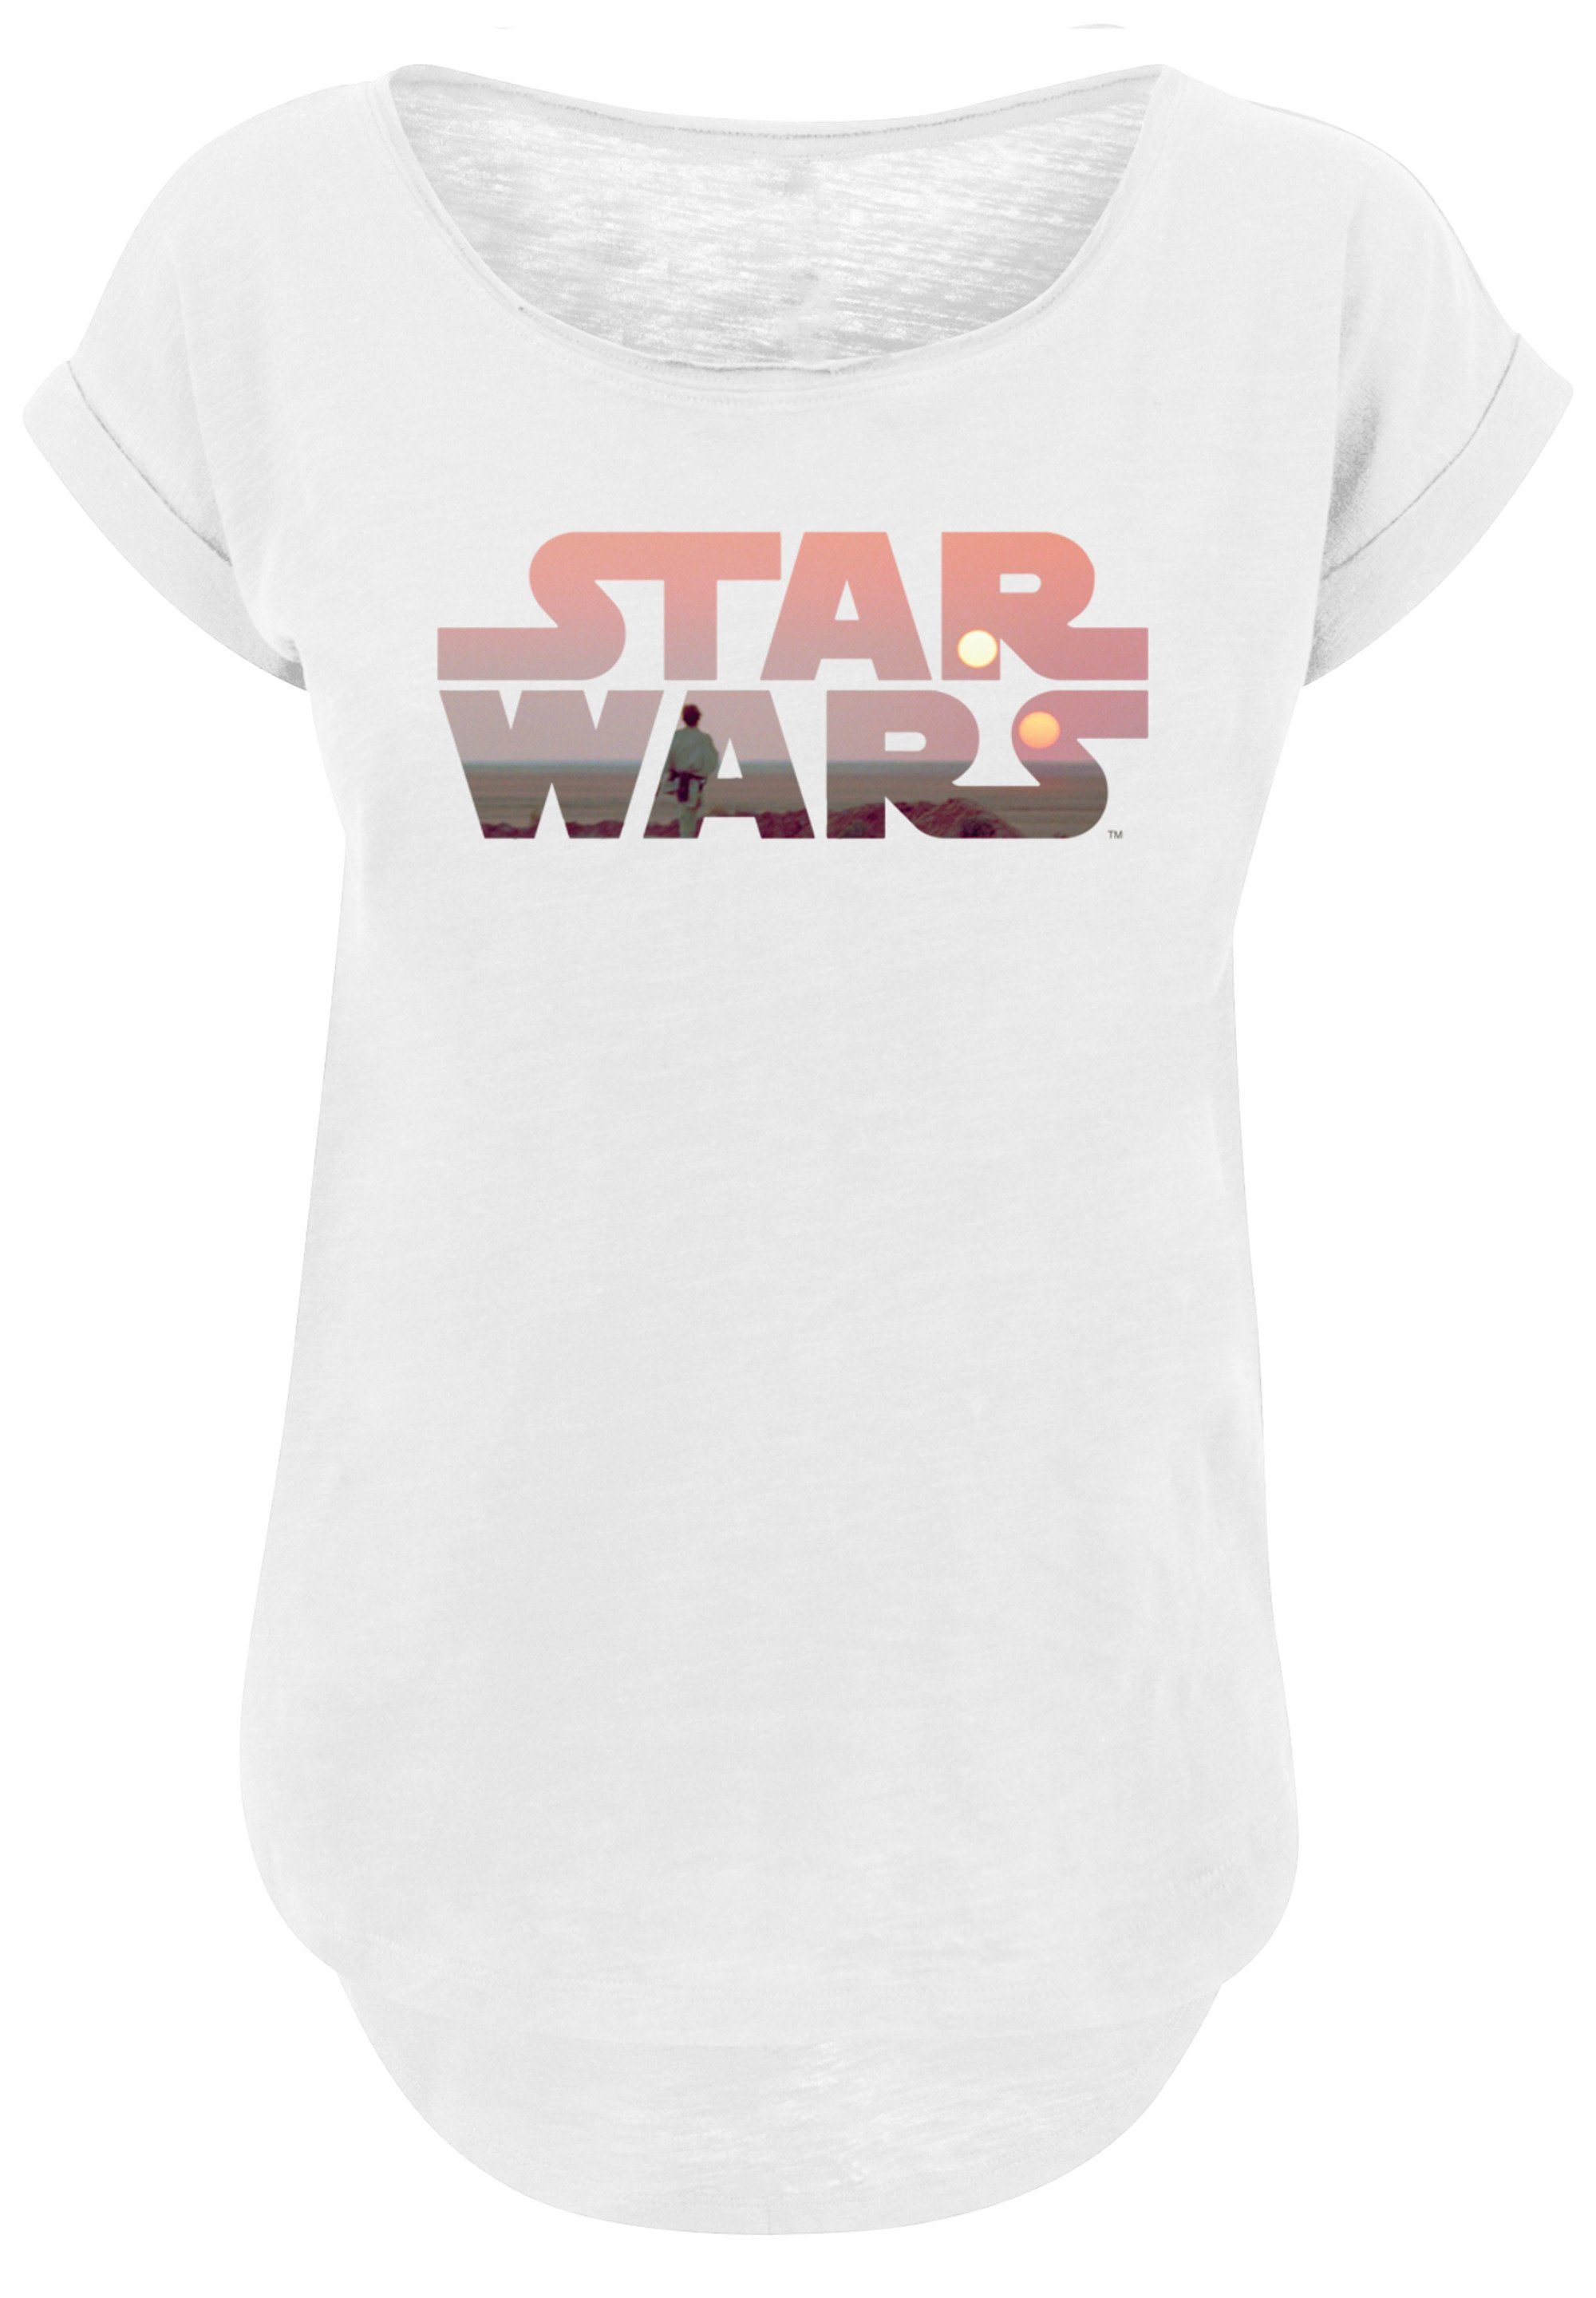 Wars mit Tatooine hohem T-Shirt Baumwollstoff F4NT4STIC Sehr Logo Tragekomfort Star weicher Print,